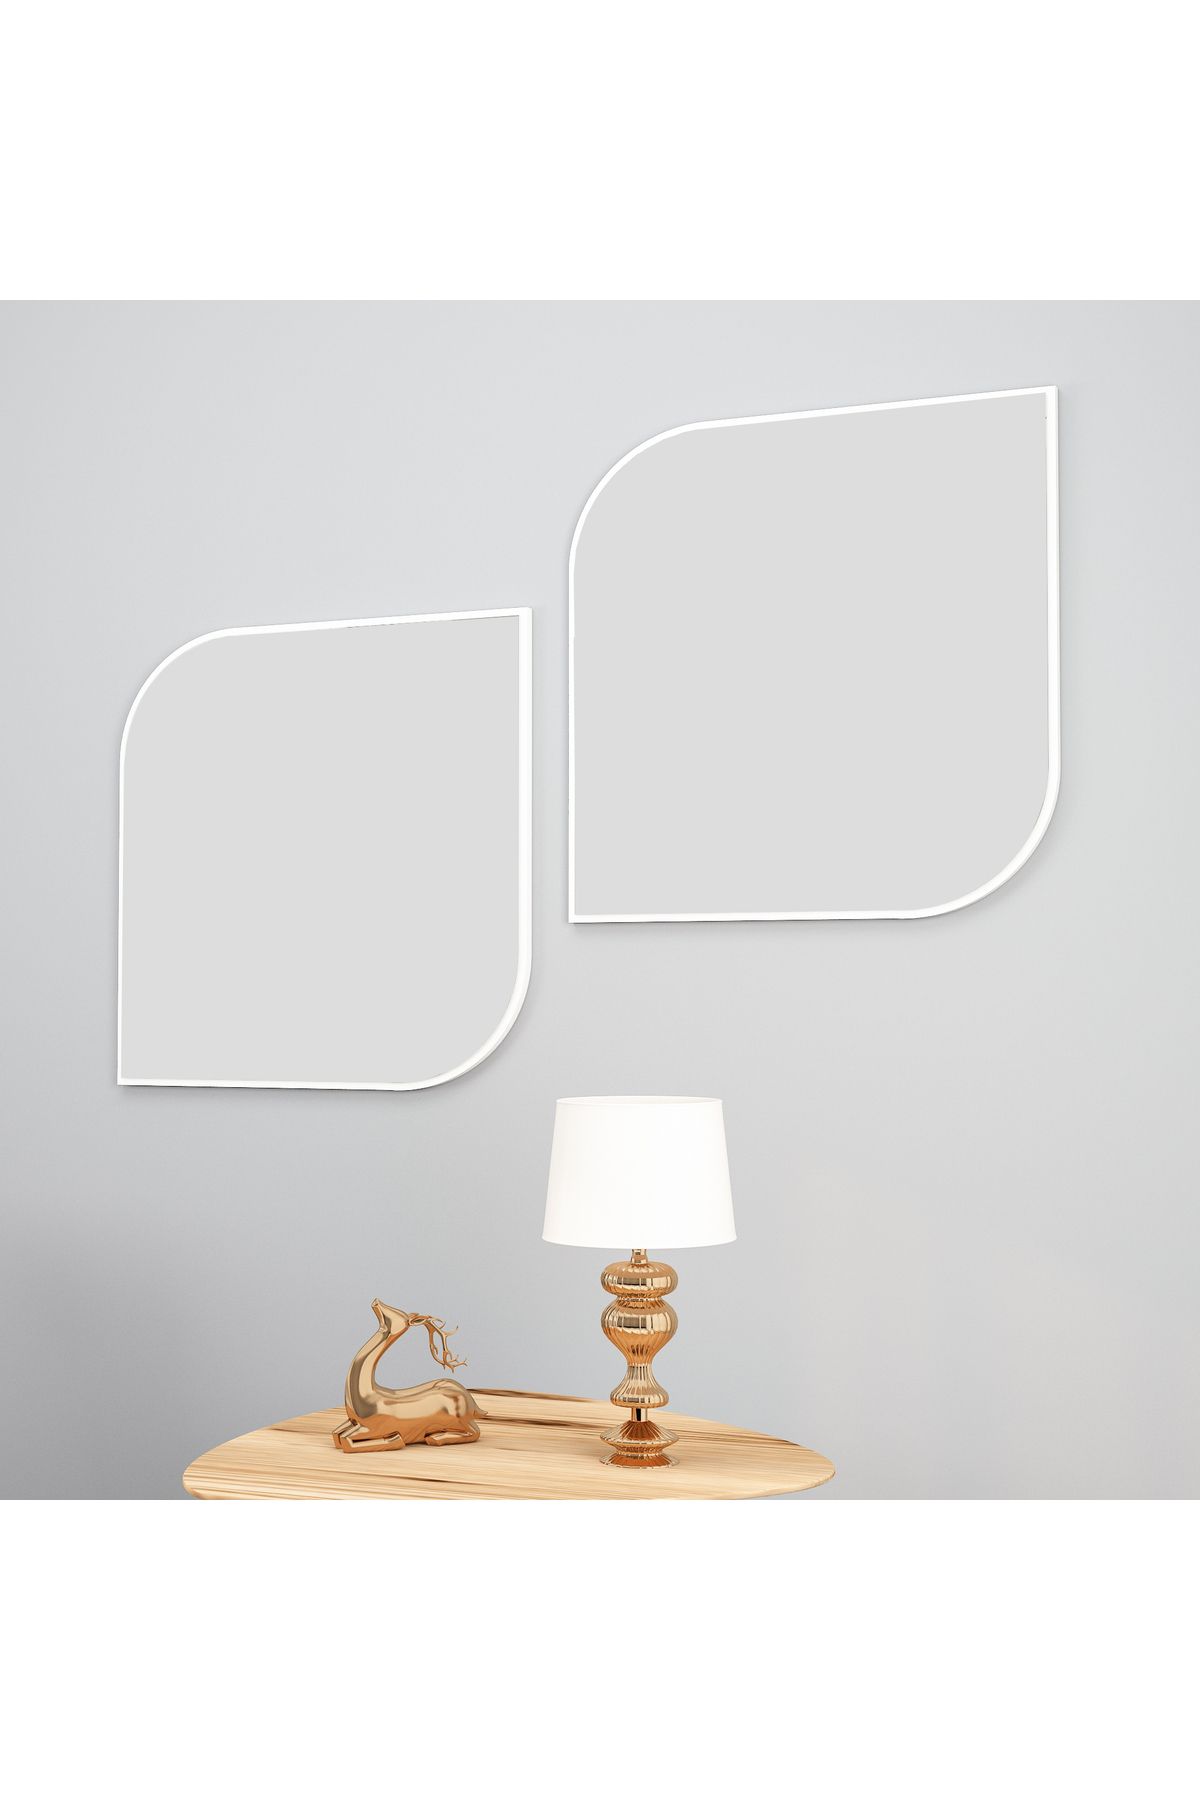 Arnetti Vero Beyaz 2 Parça Modern Dekoratif Salon Ayna